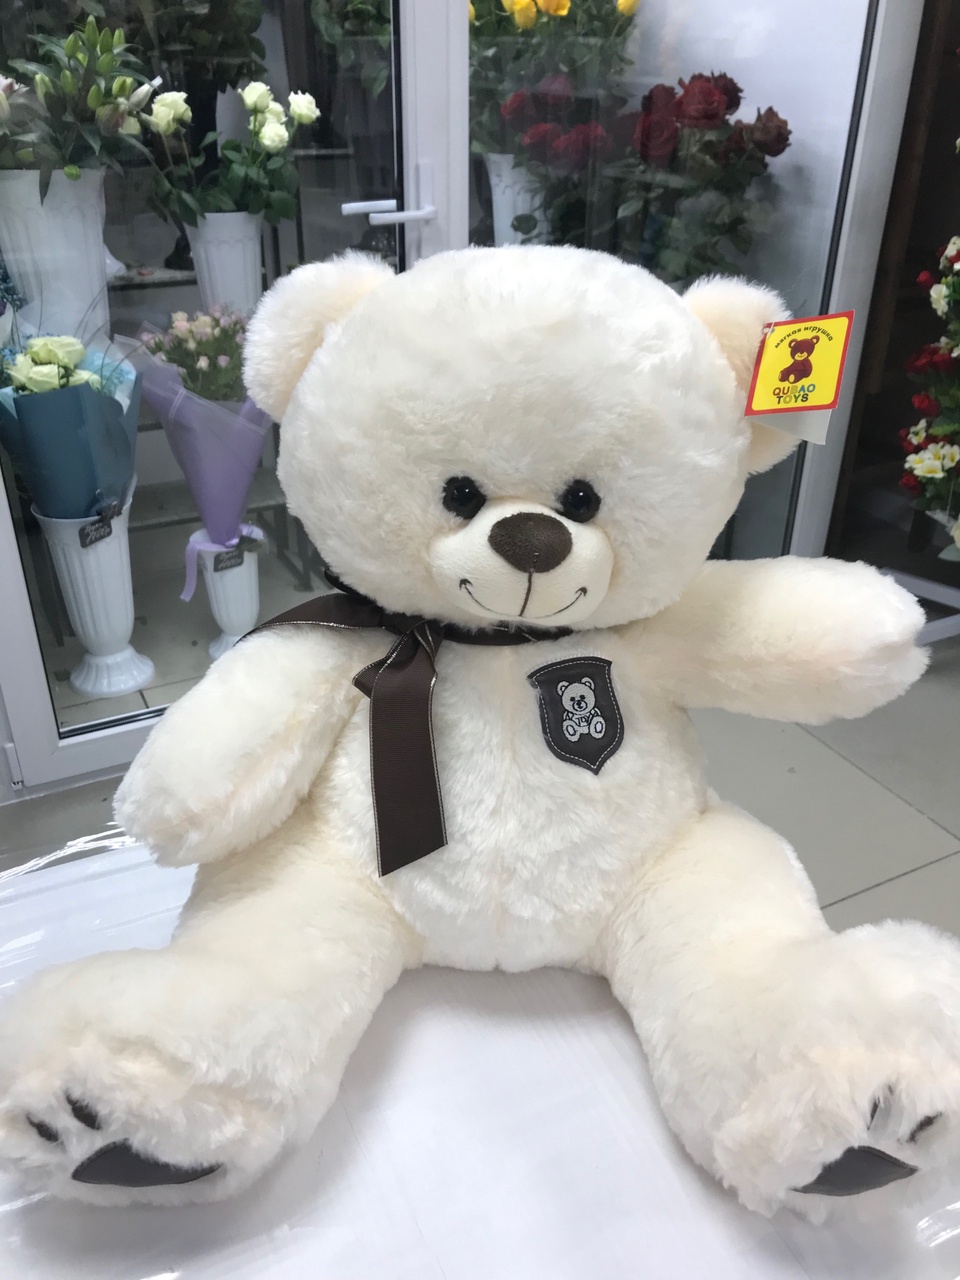 Мягкая игрушка "Медведь" 40 см. Арт.9010 - 1 300 ₽, заказать онлайн.